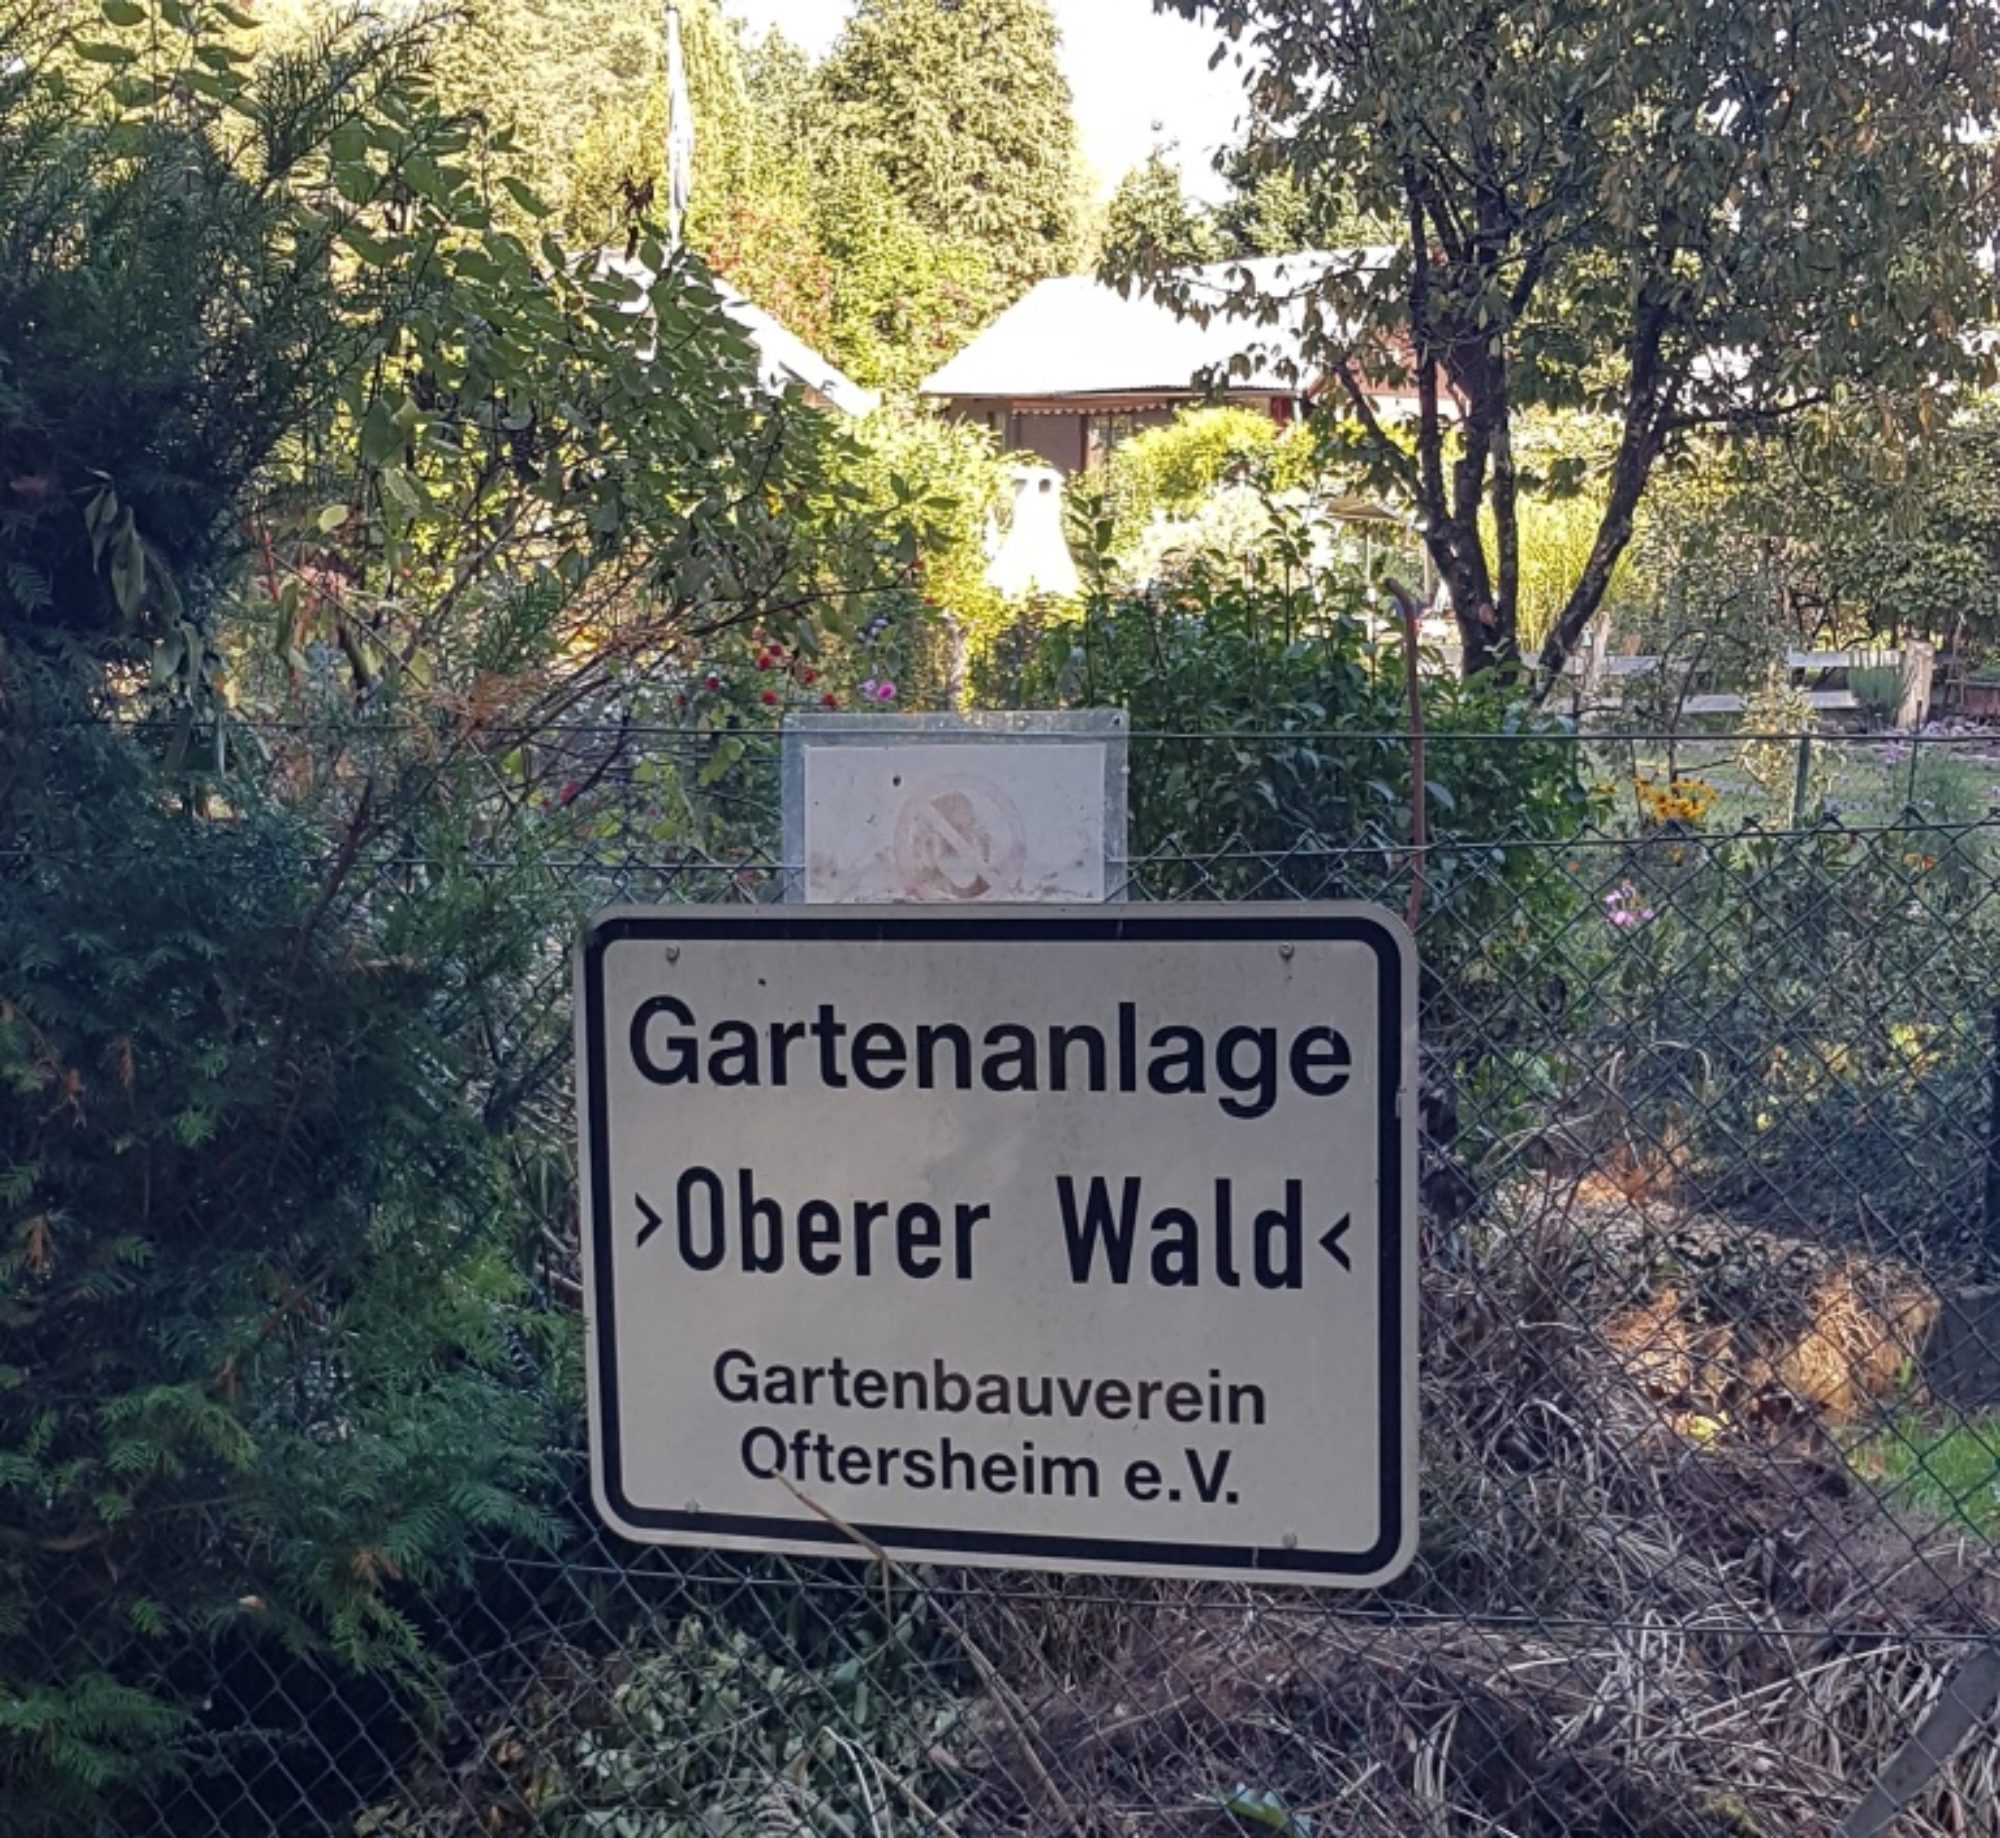 Gartenbauverein Oftersheim e.V.